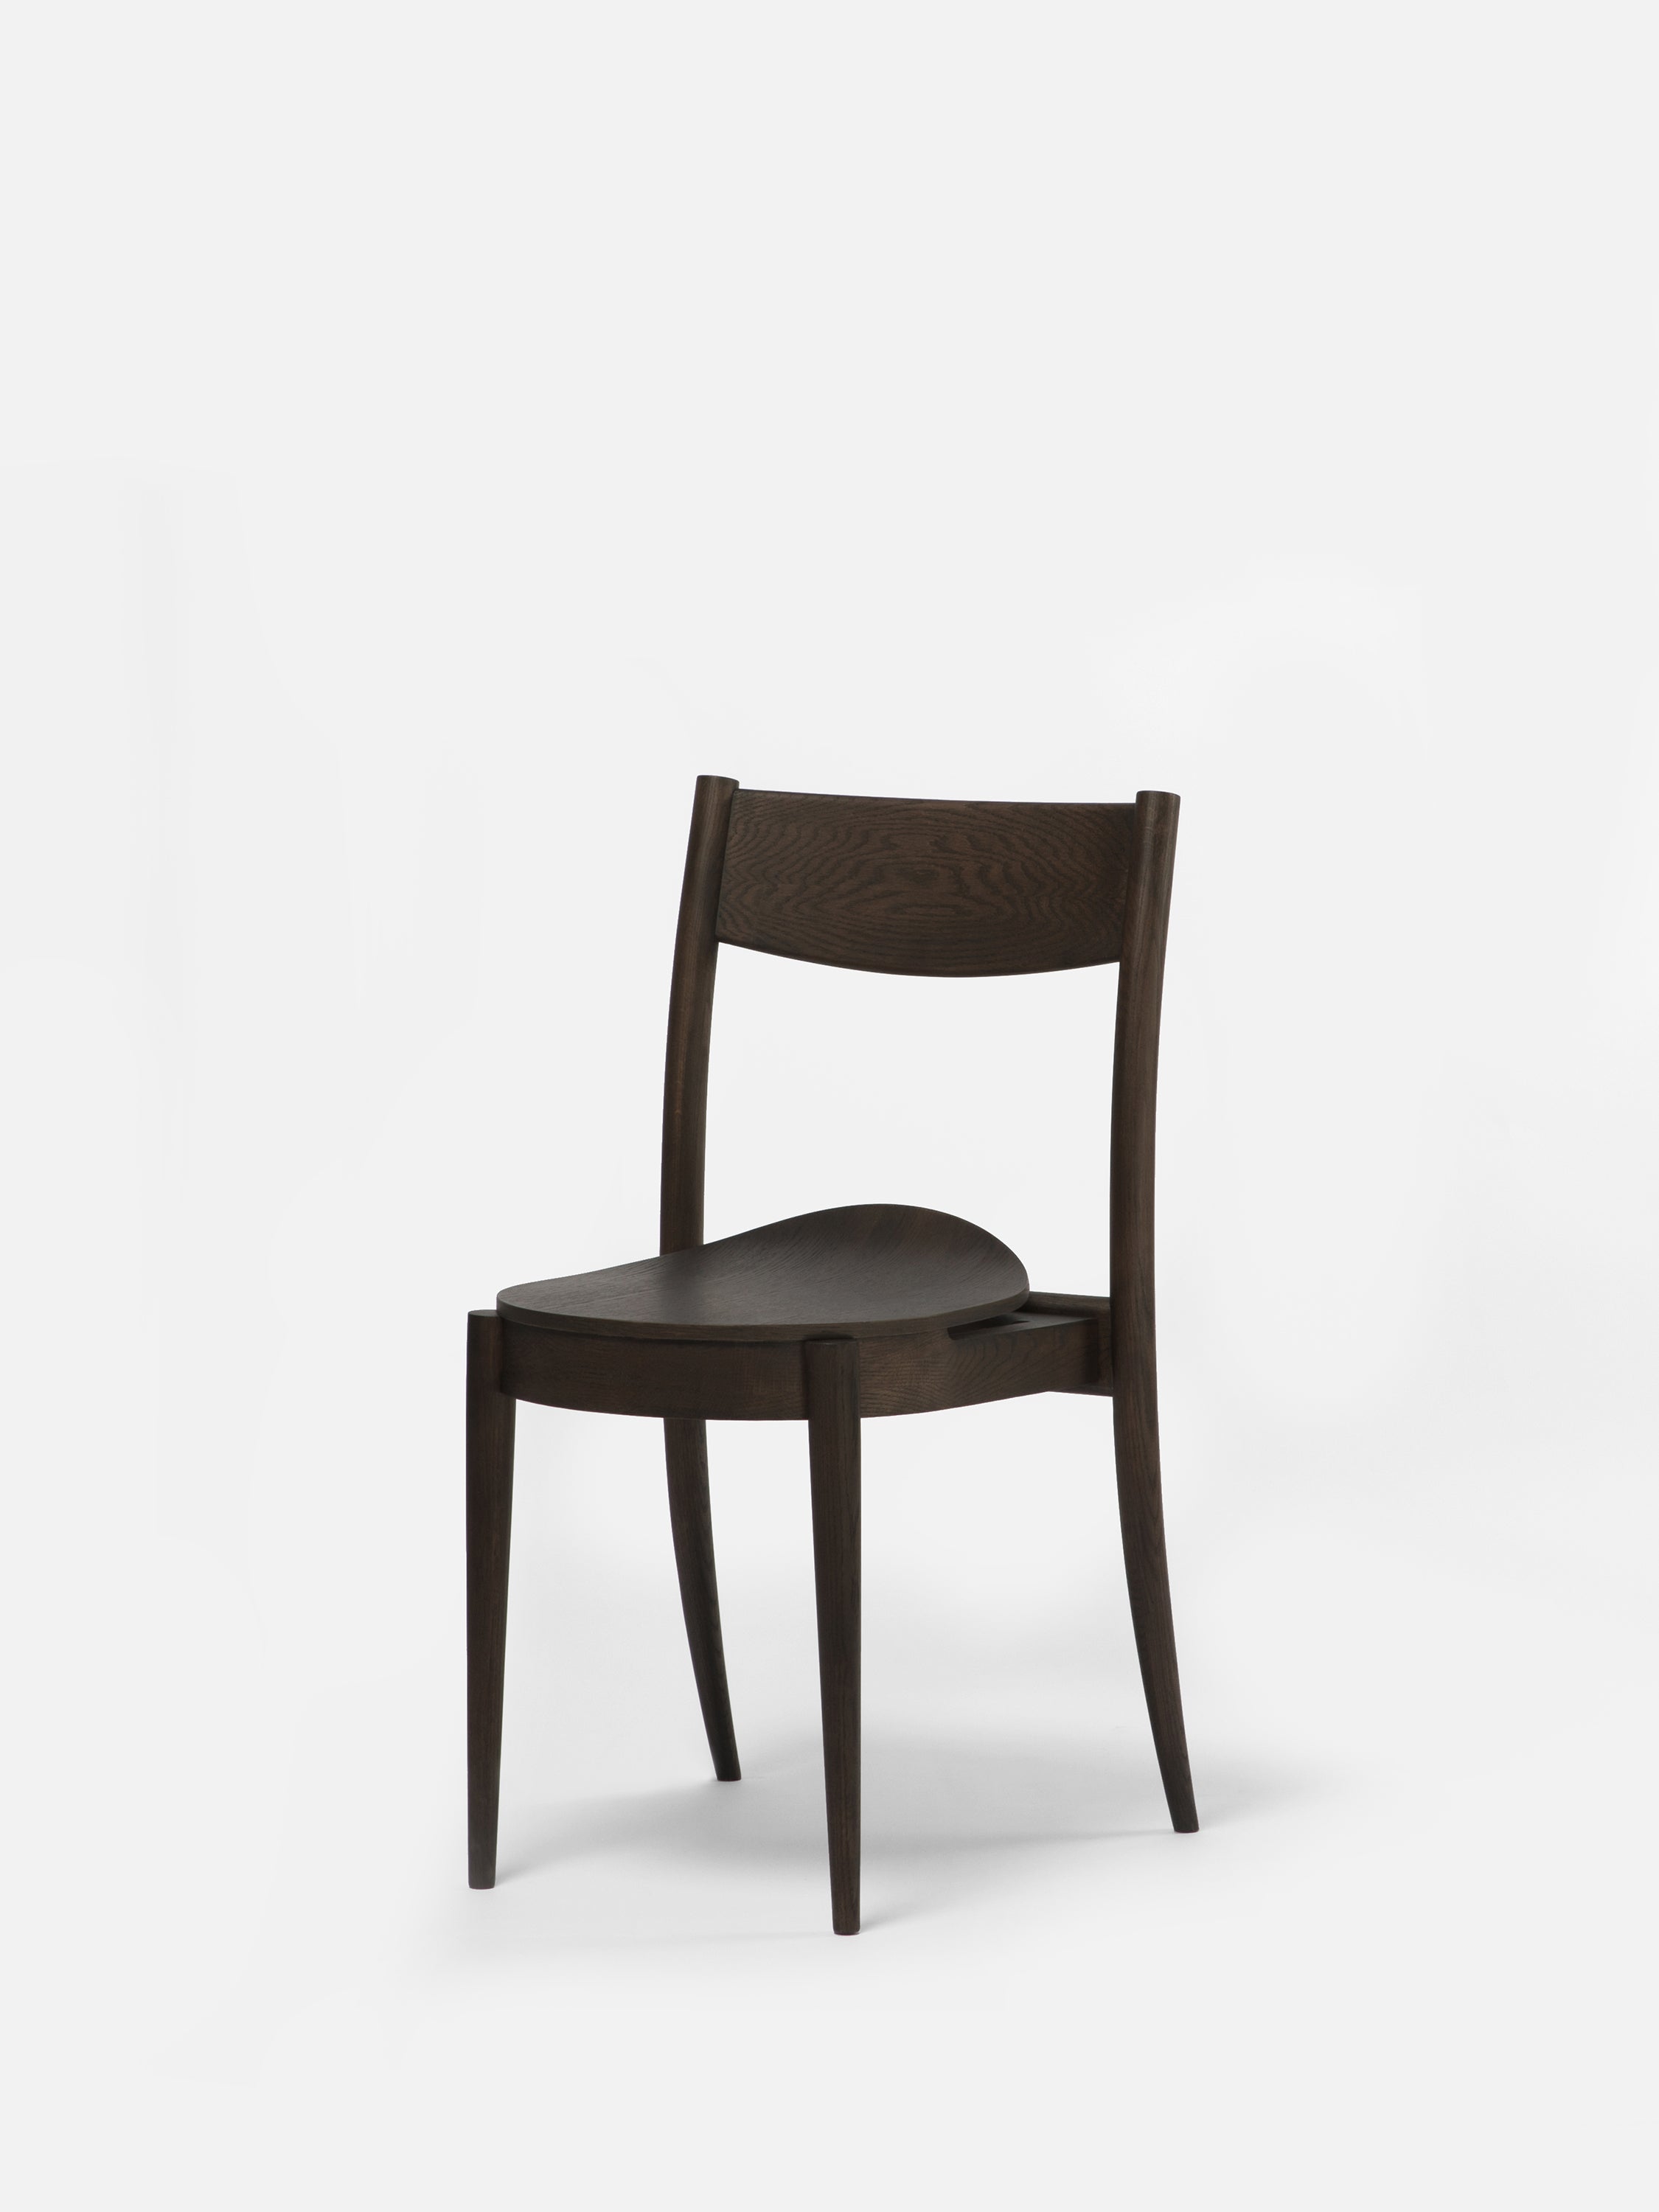 BOUNCE CHAIR Chair Ziinlife Modern Design Furniture Hong Kong Smoky Black